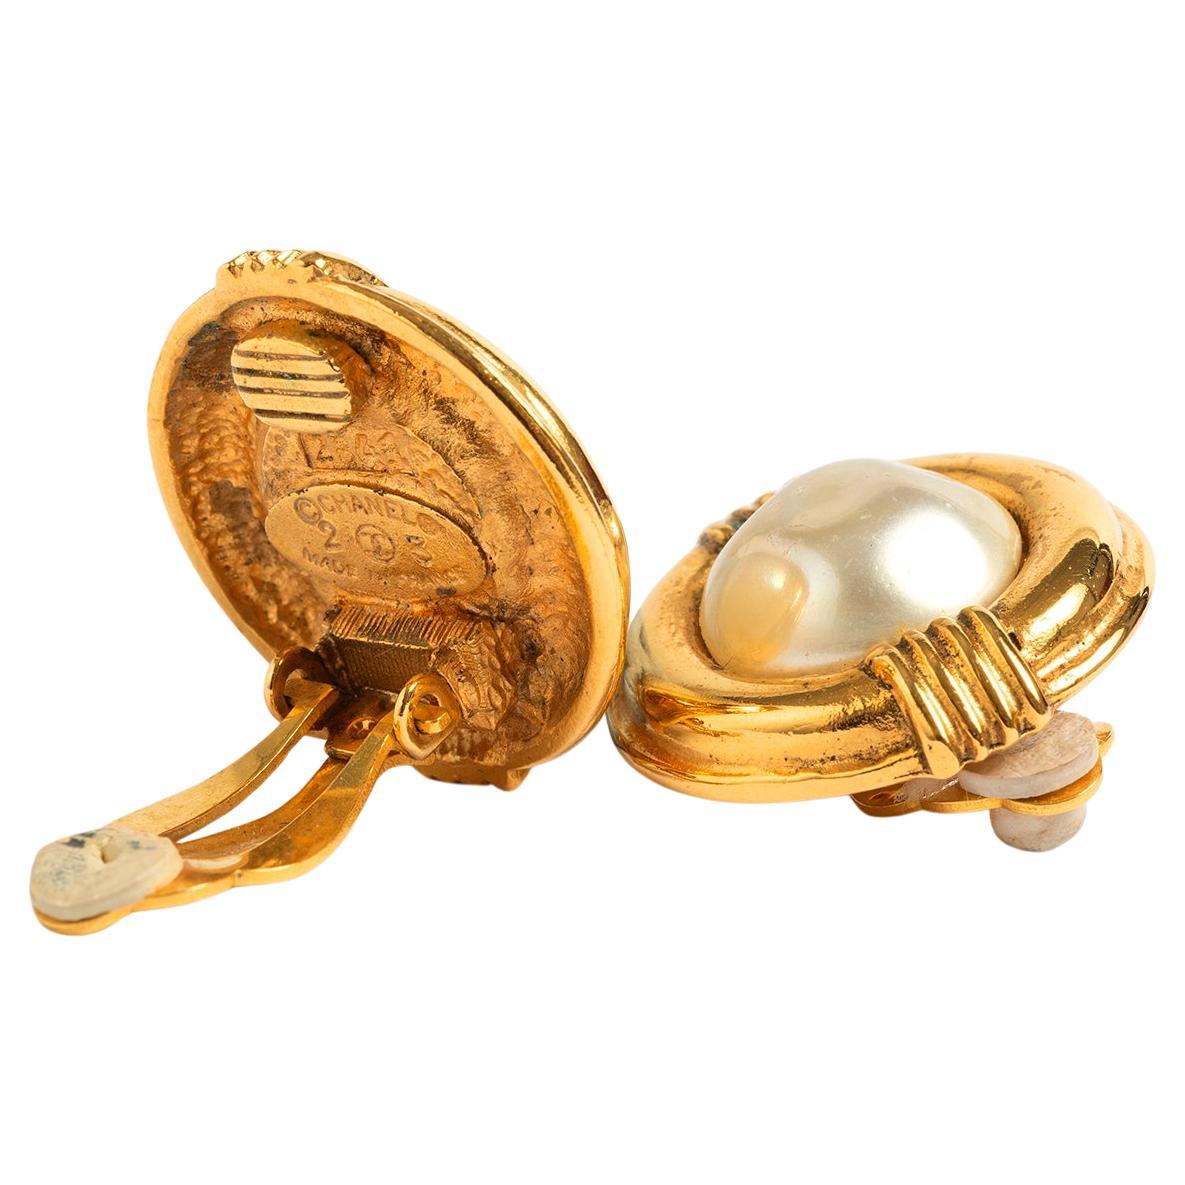 Nos boucles d'oreilles Chanel vintage sont composées d'une base et d'un clip en métal doré avec une perle simulée au centre. Il s'agit de premiers bijoux fantaisie Chanel, estampillés 23 2641, datant de la saison 24 en 1984, conçus par Victoire d